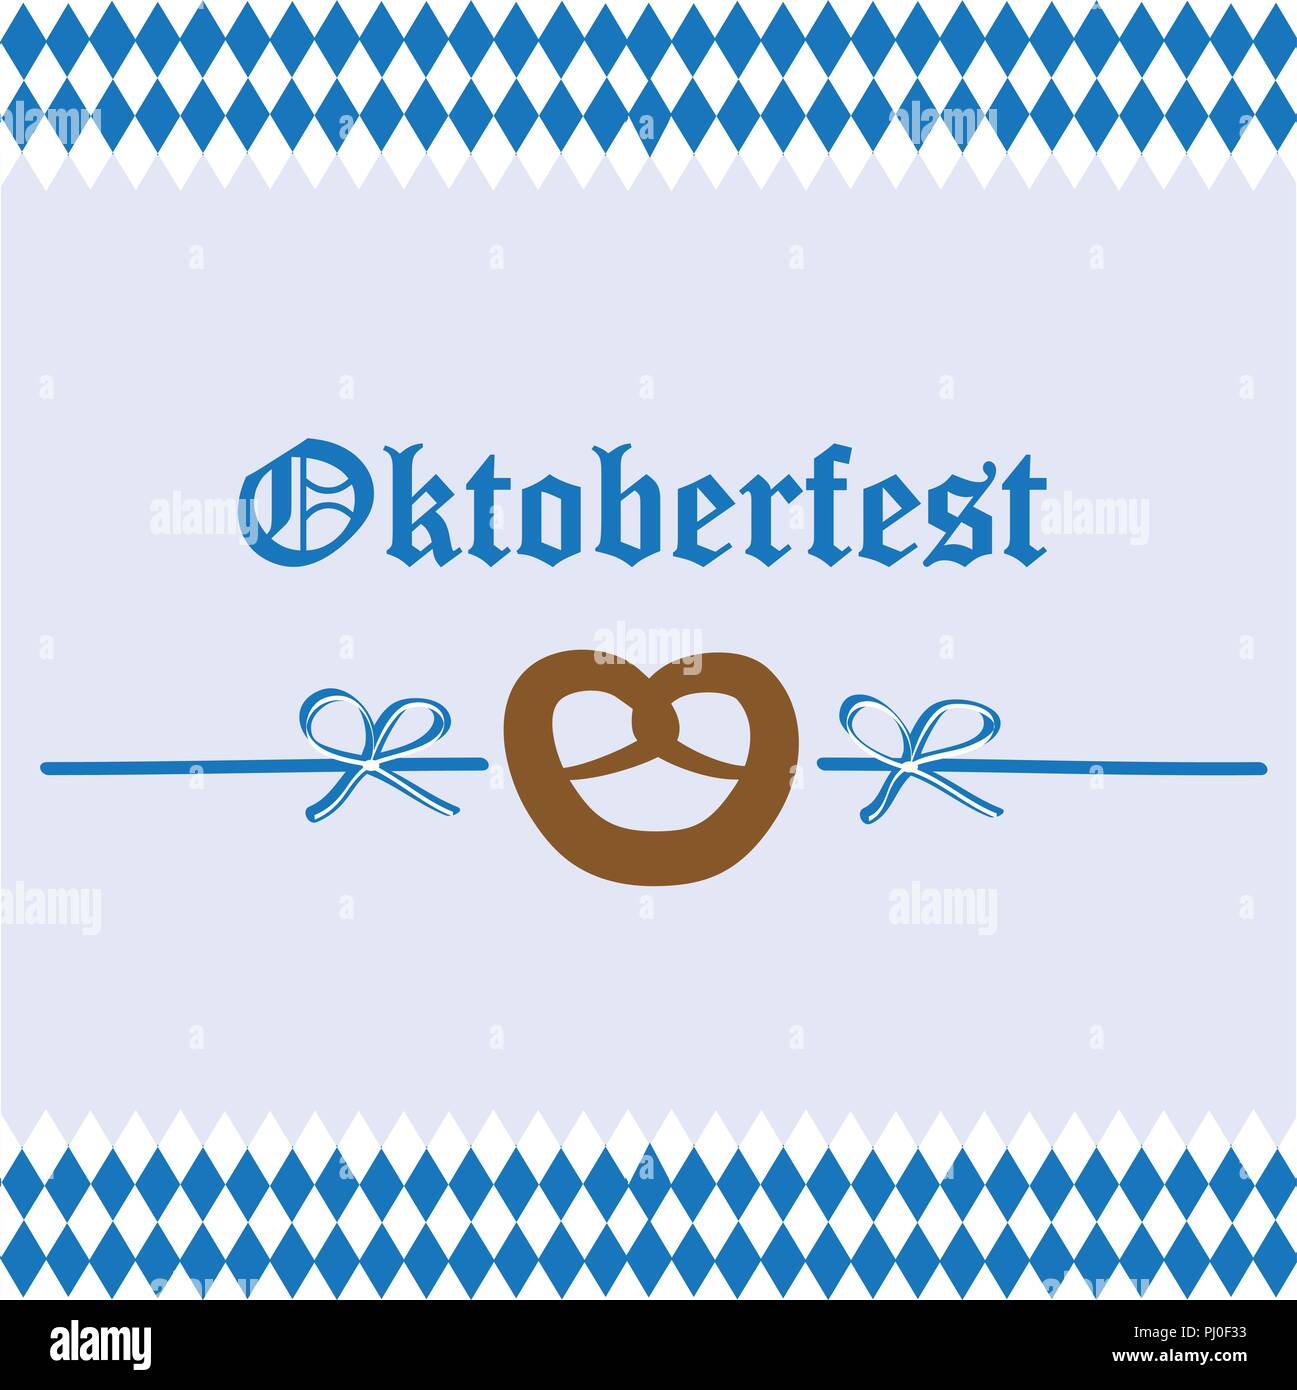 Célébration de l'Oktoberfest drapeau bavière pretzel background vector illustration EPS10 Illustration de Vecteur